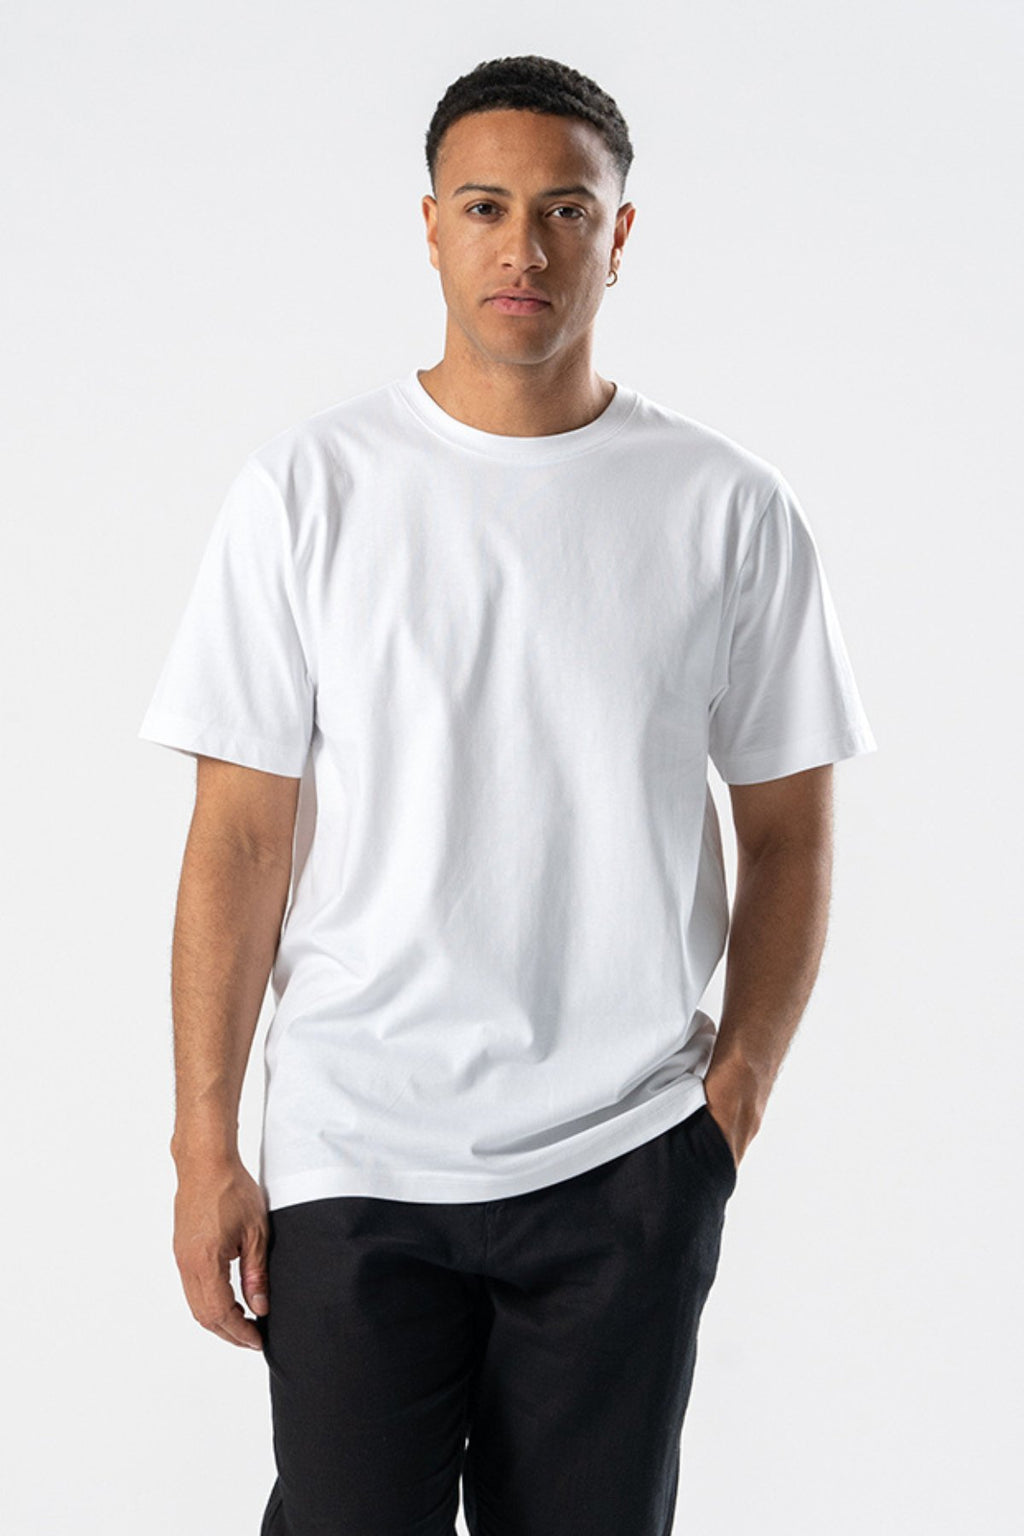 Boxfit T-shirt - Package Deal (6 pcs.)